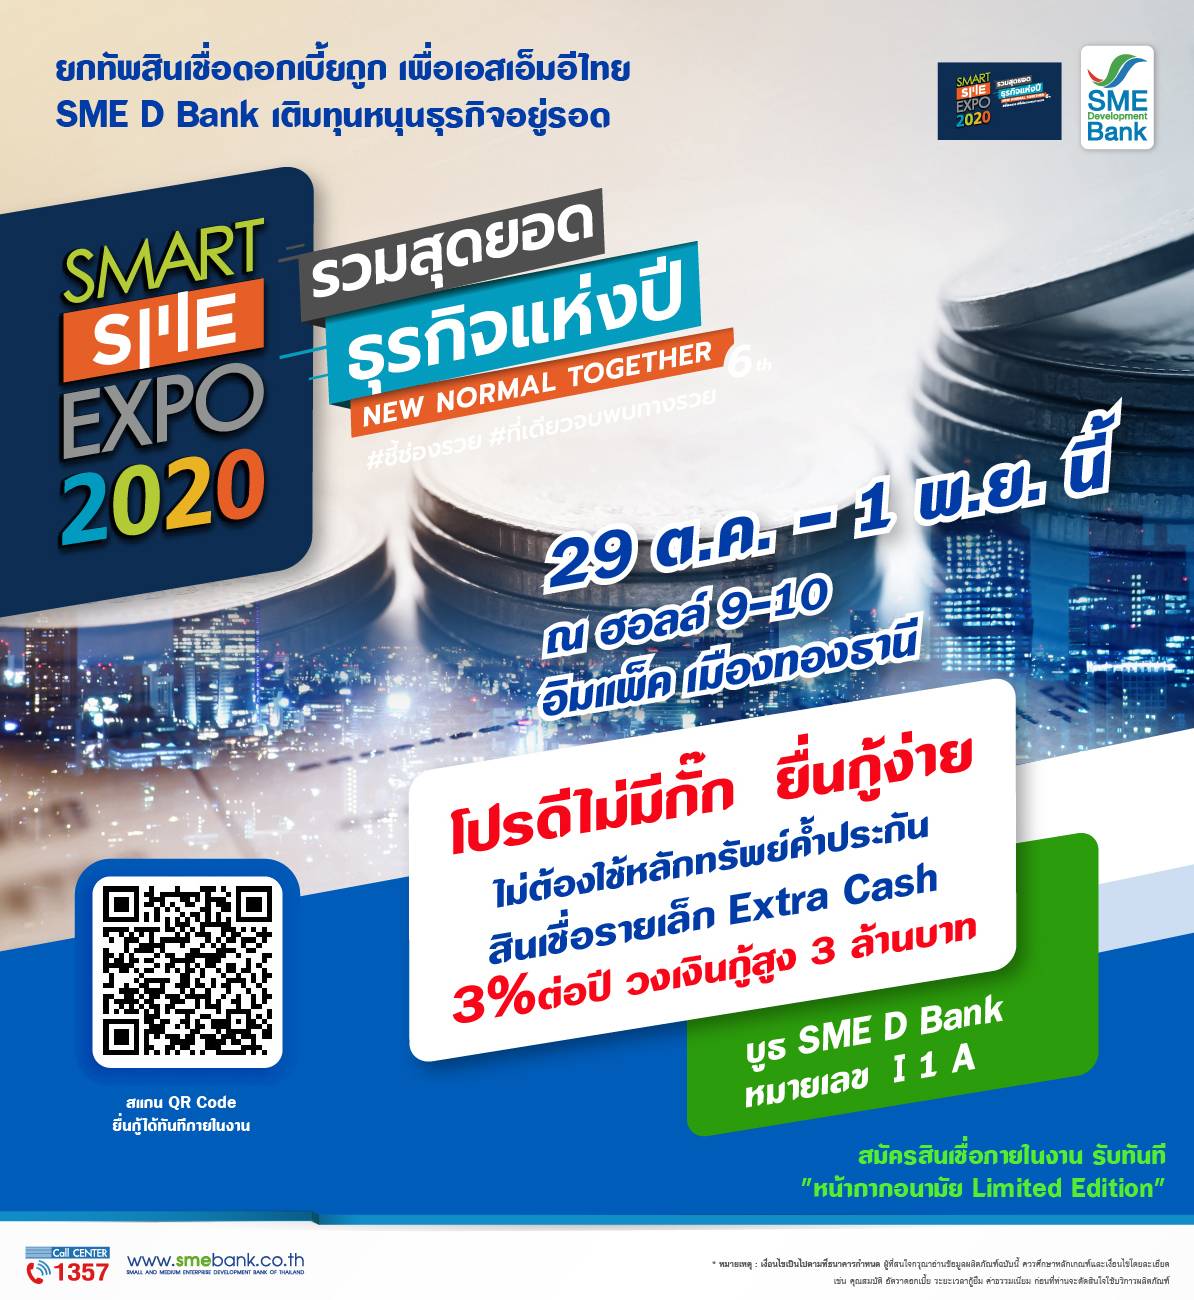 SME D Bank จัดโปรดีไม่มีกั๊กร่วมงาน Smart SME Expo 2020 เติมทุน เสริมสภาพคล่อง ดอกเบี้ยพิเศษ ตอบโจทย์เอสเอ็มอีไทย